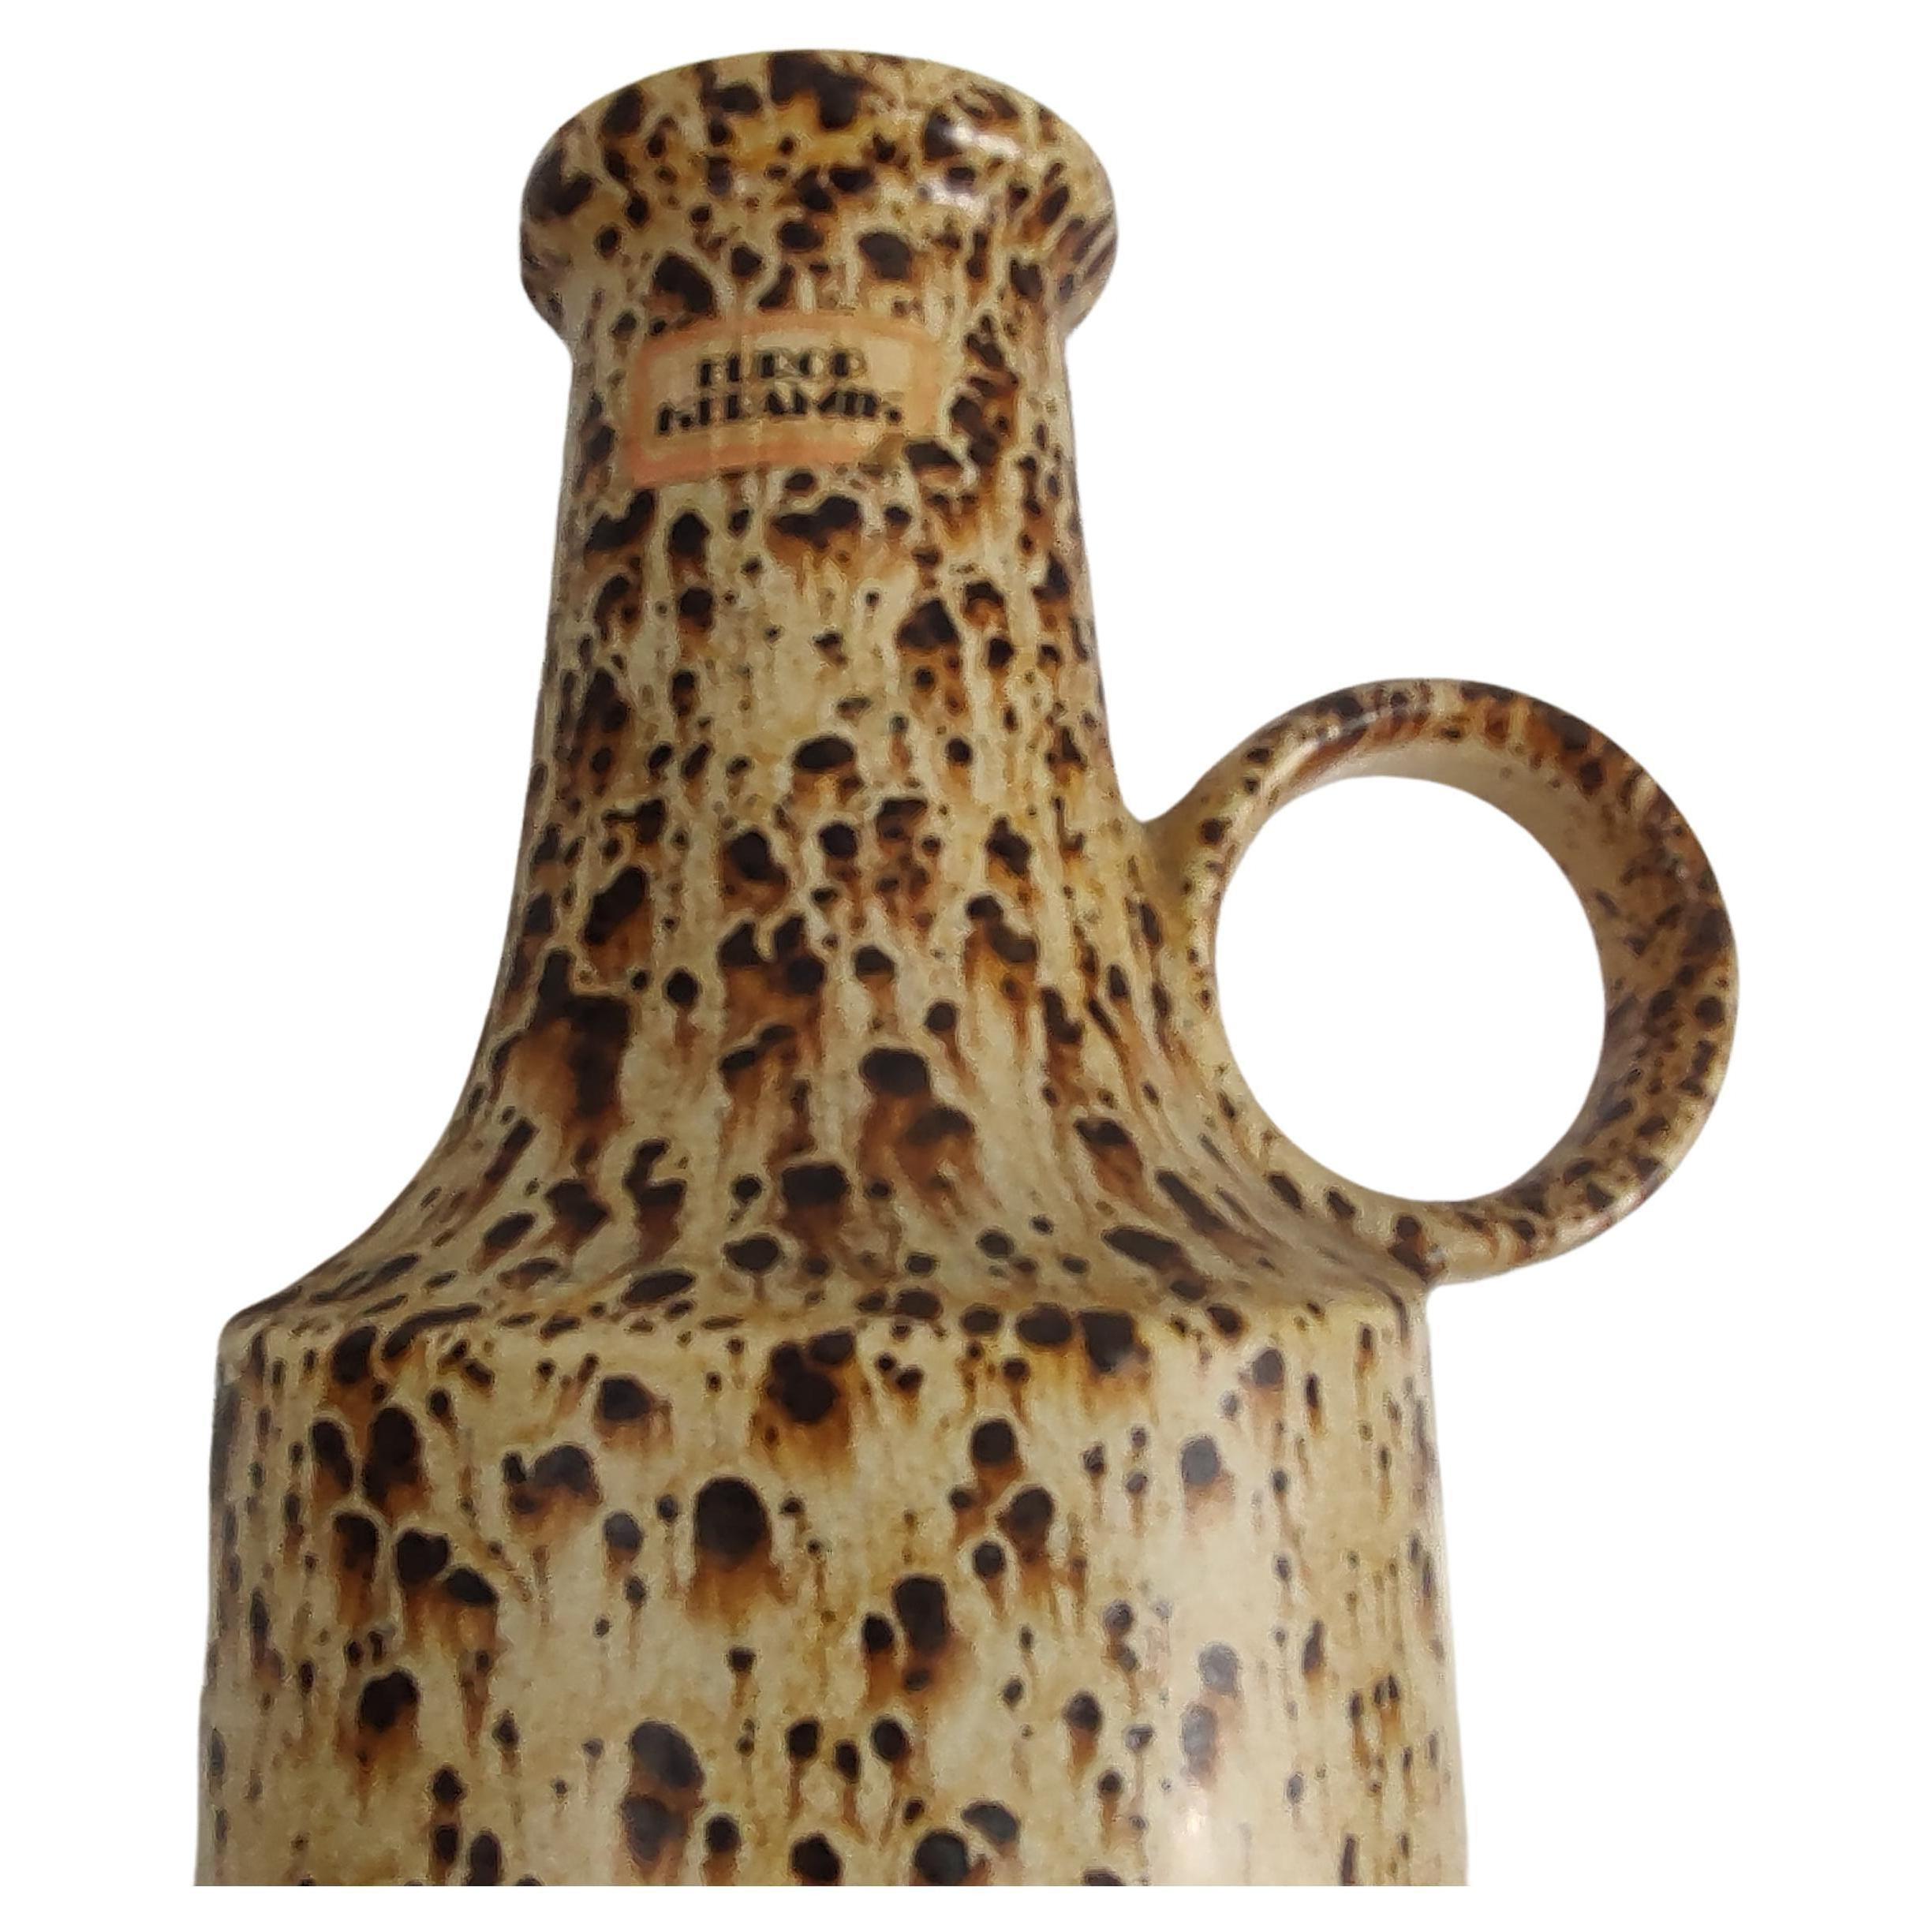 Fabuleux vase en forme de bouteille, haut et magnifiquement émaillé, de Scheurich Keramik, Allemagne de l'Ouest, vers 1960. Dessin d'éclaboussures en haut dans les tons bruns. En excellent état vintage avec une usure minimale, une piqûre de puce au